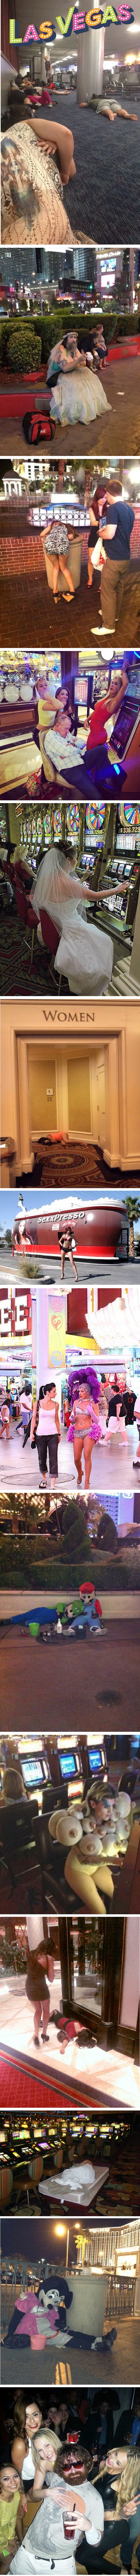 Čudni i smiješni prizori koje možete vidjeti samo u Las Vegasu 